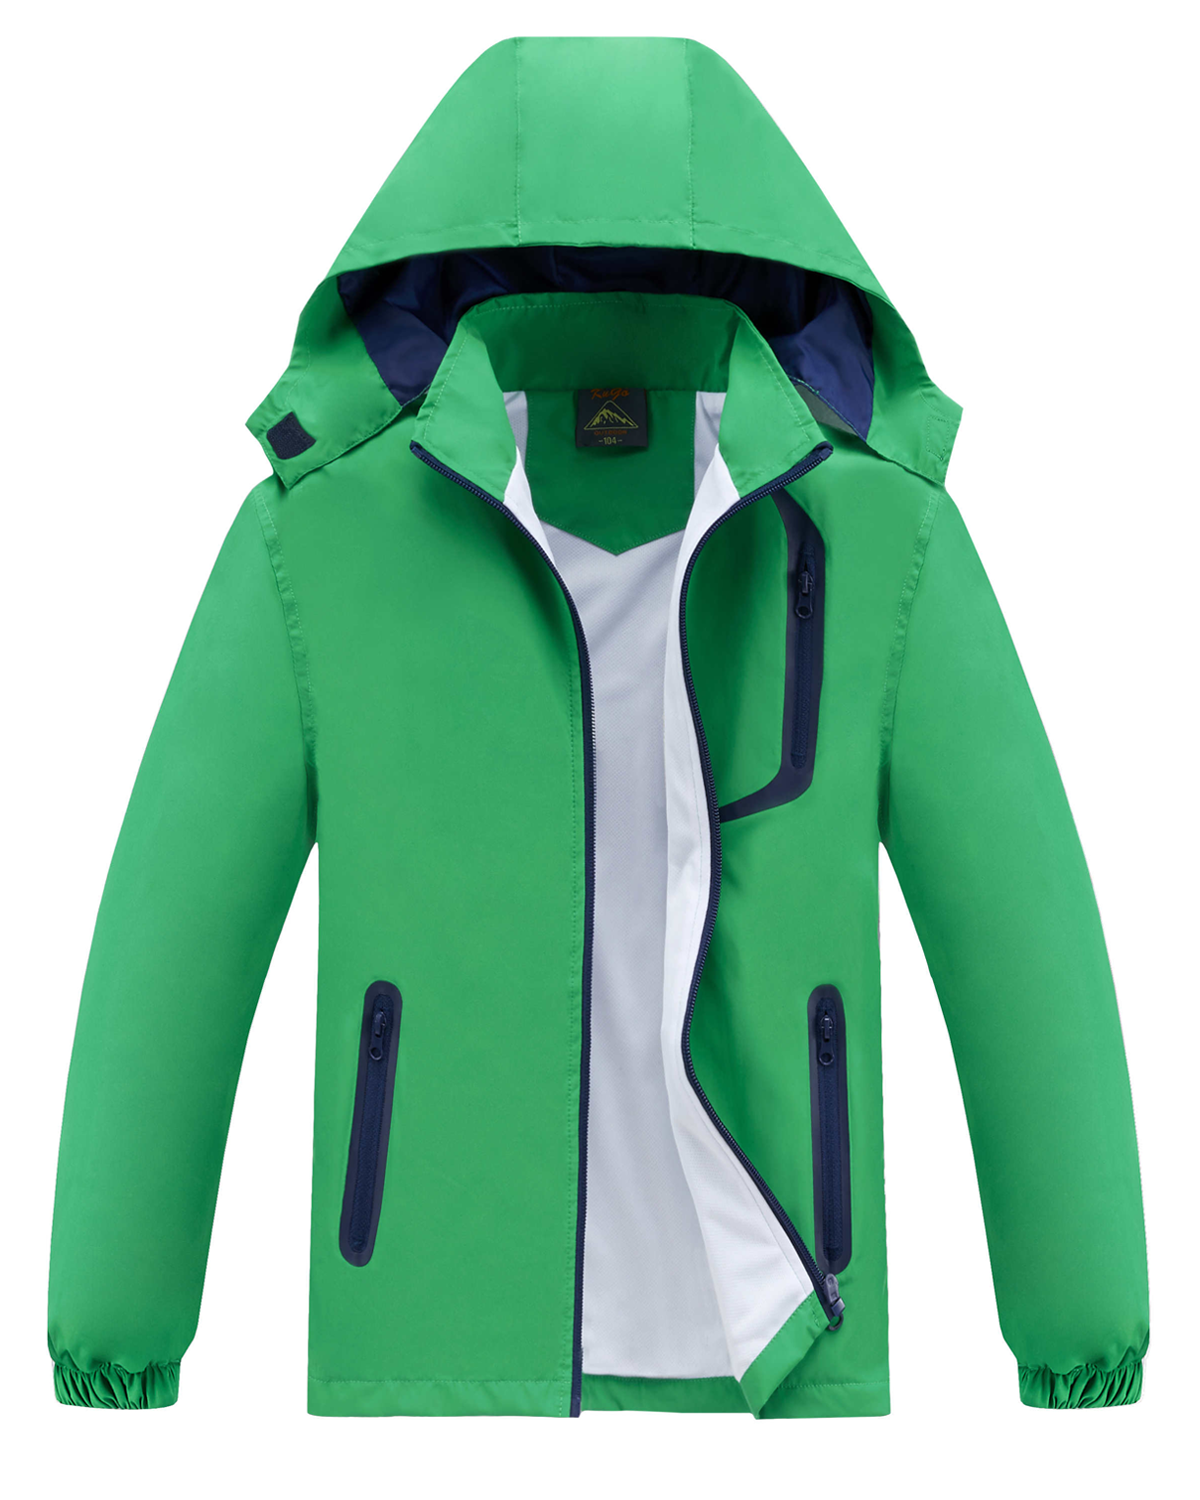 Chlapecká jarní, podzimní bunda - KUGO B2868, zelená Barva: Zelená, Velikost: 110